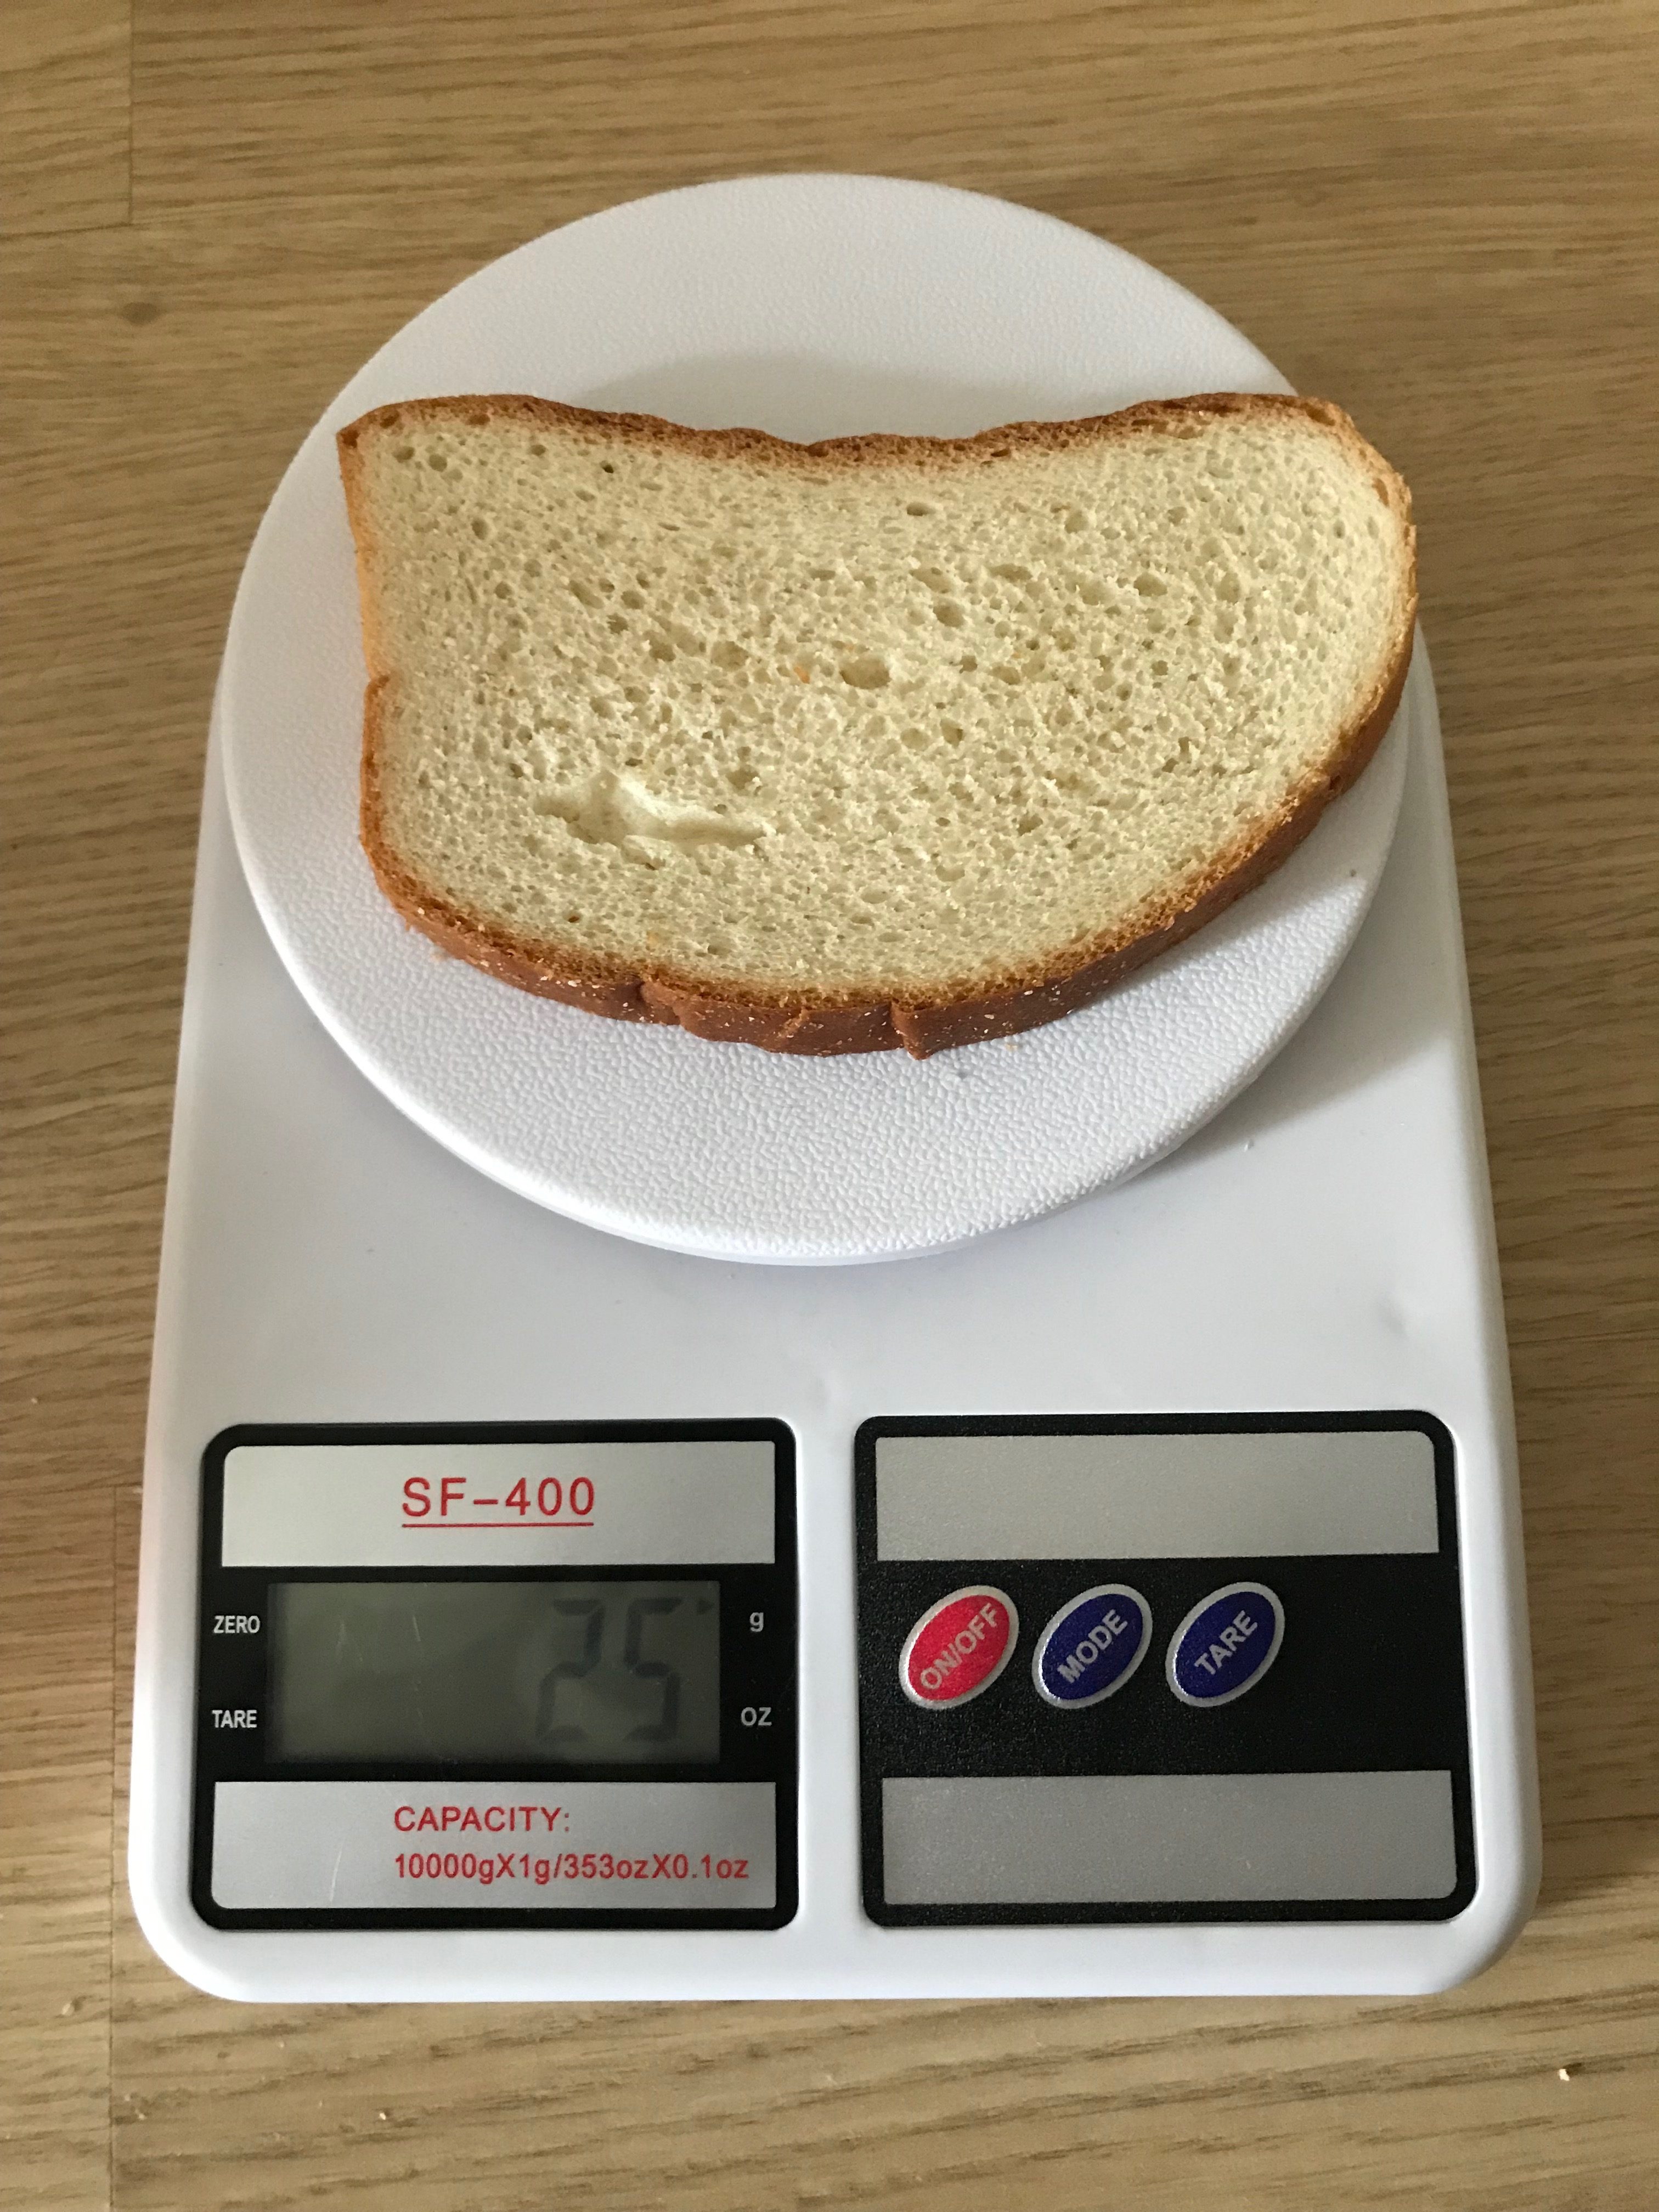 baltos duonos riekės svoris.